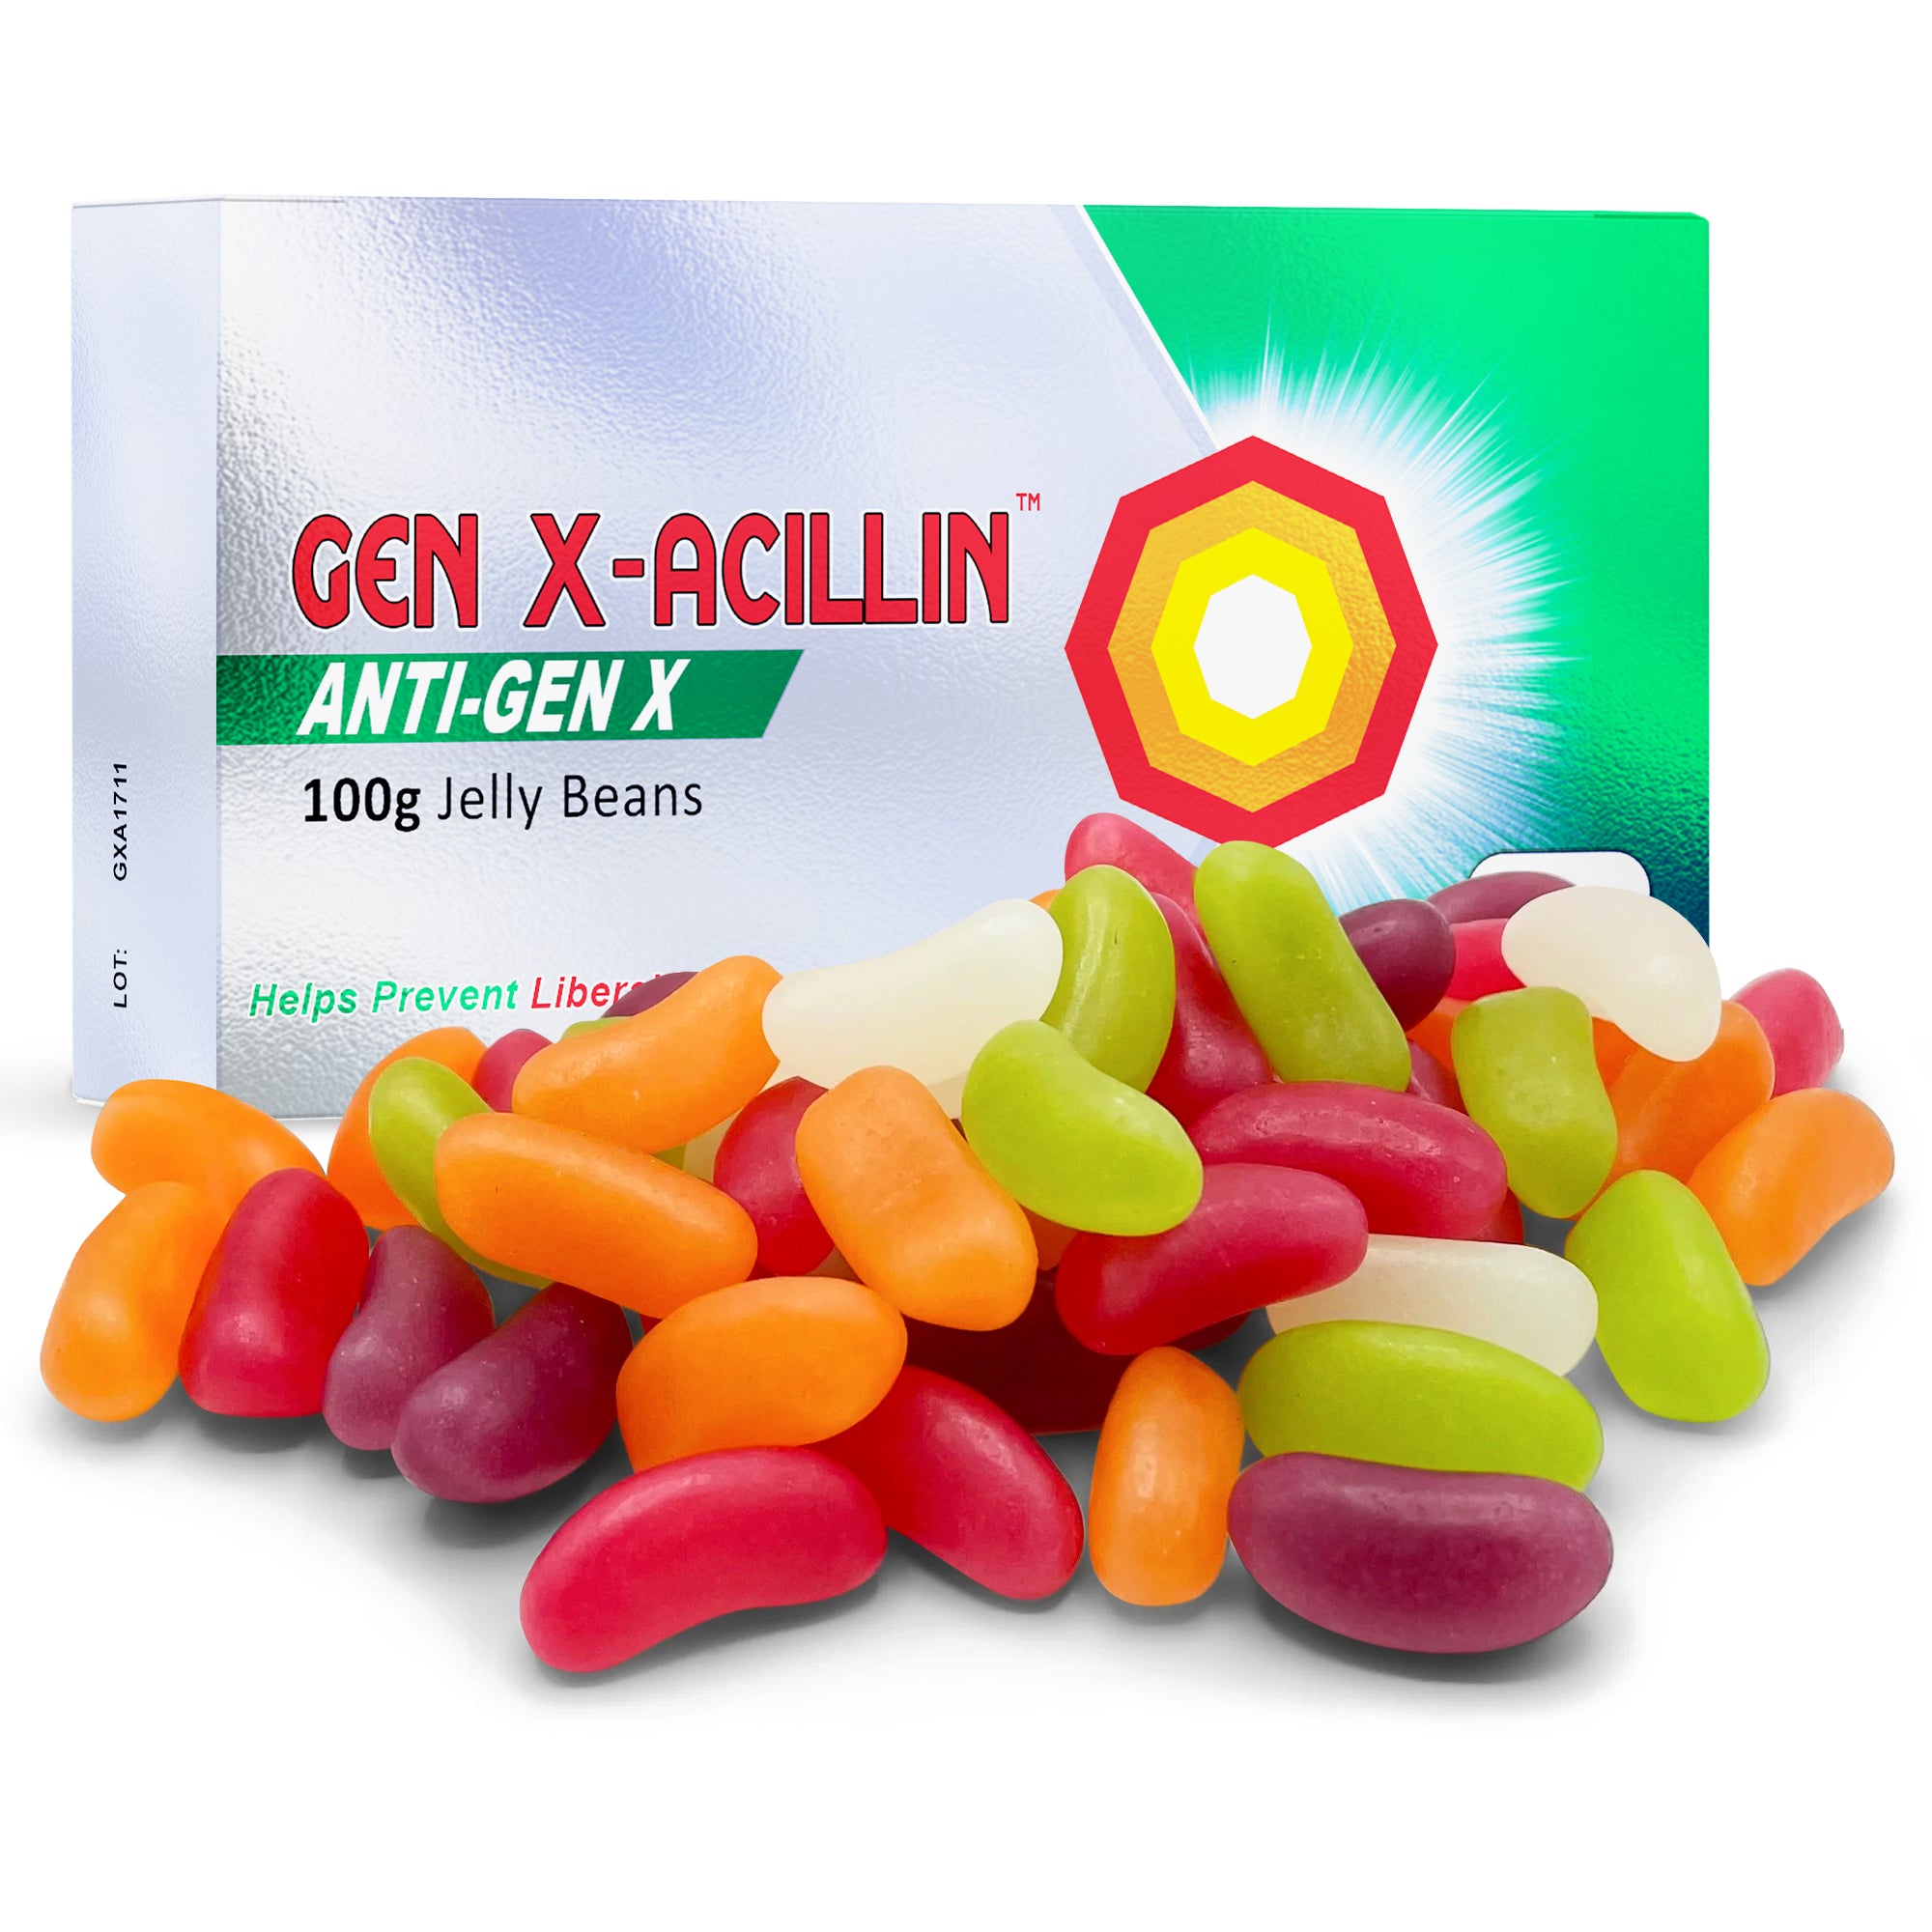 Gen-Xacillin Joke Tablet Box With Jelly Beans